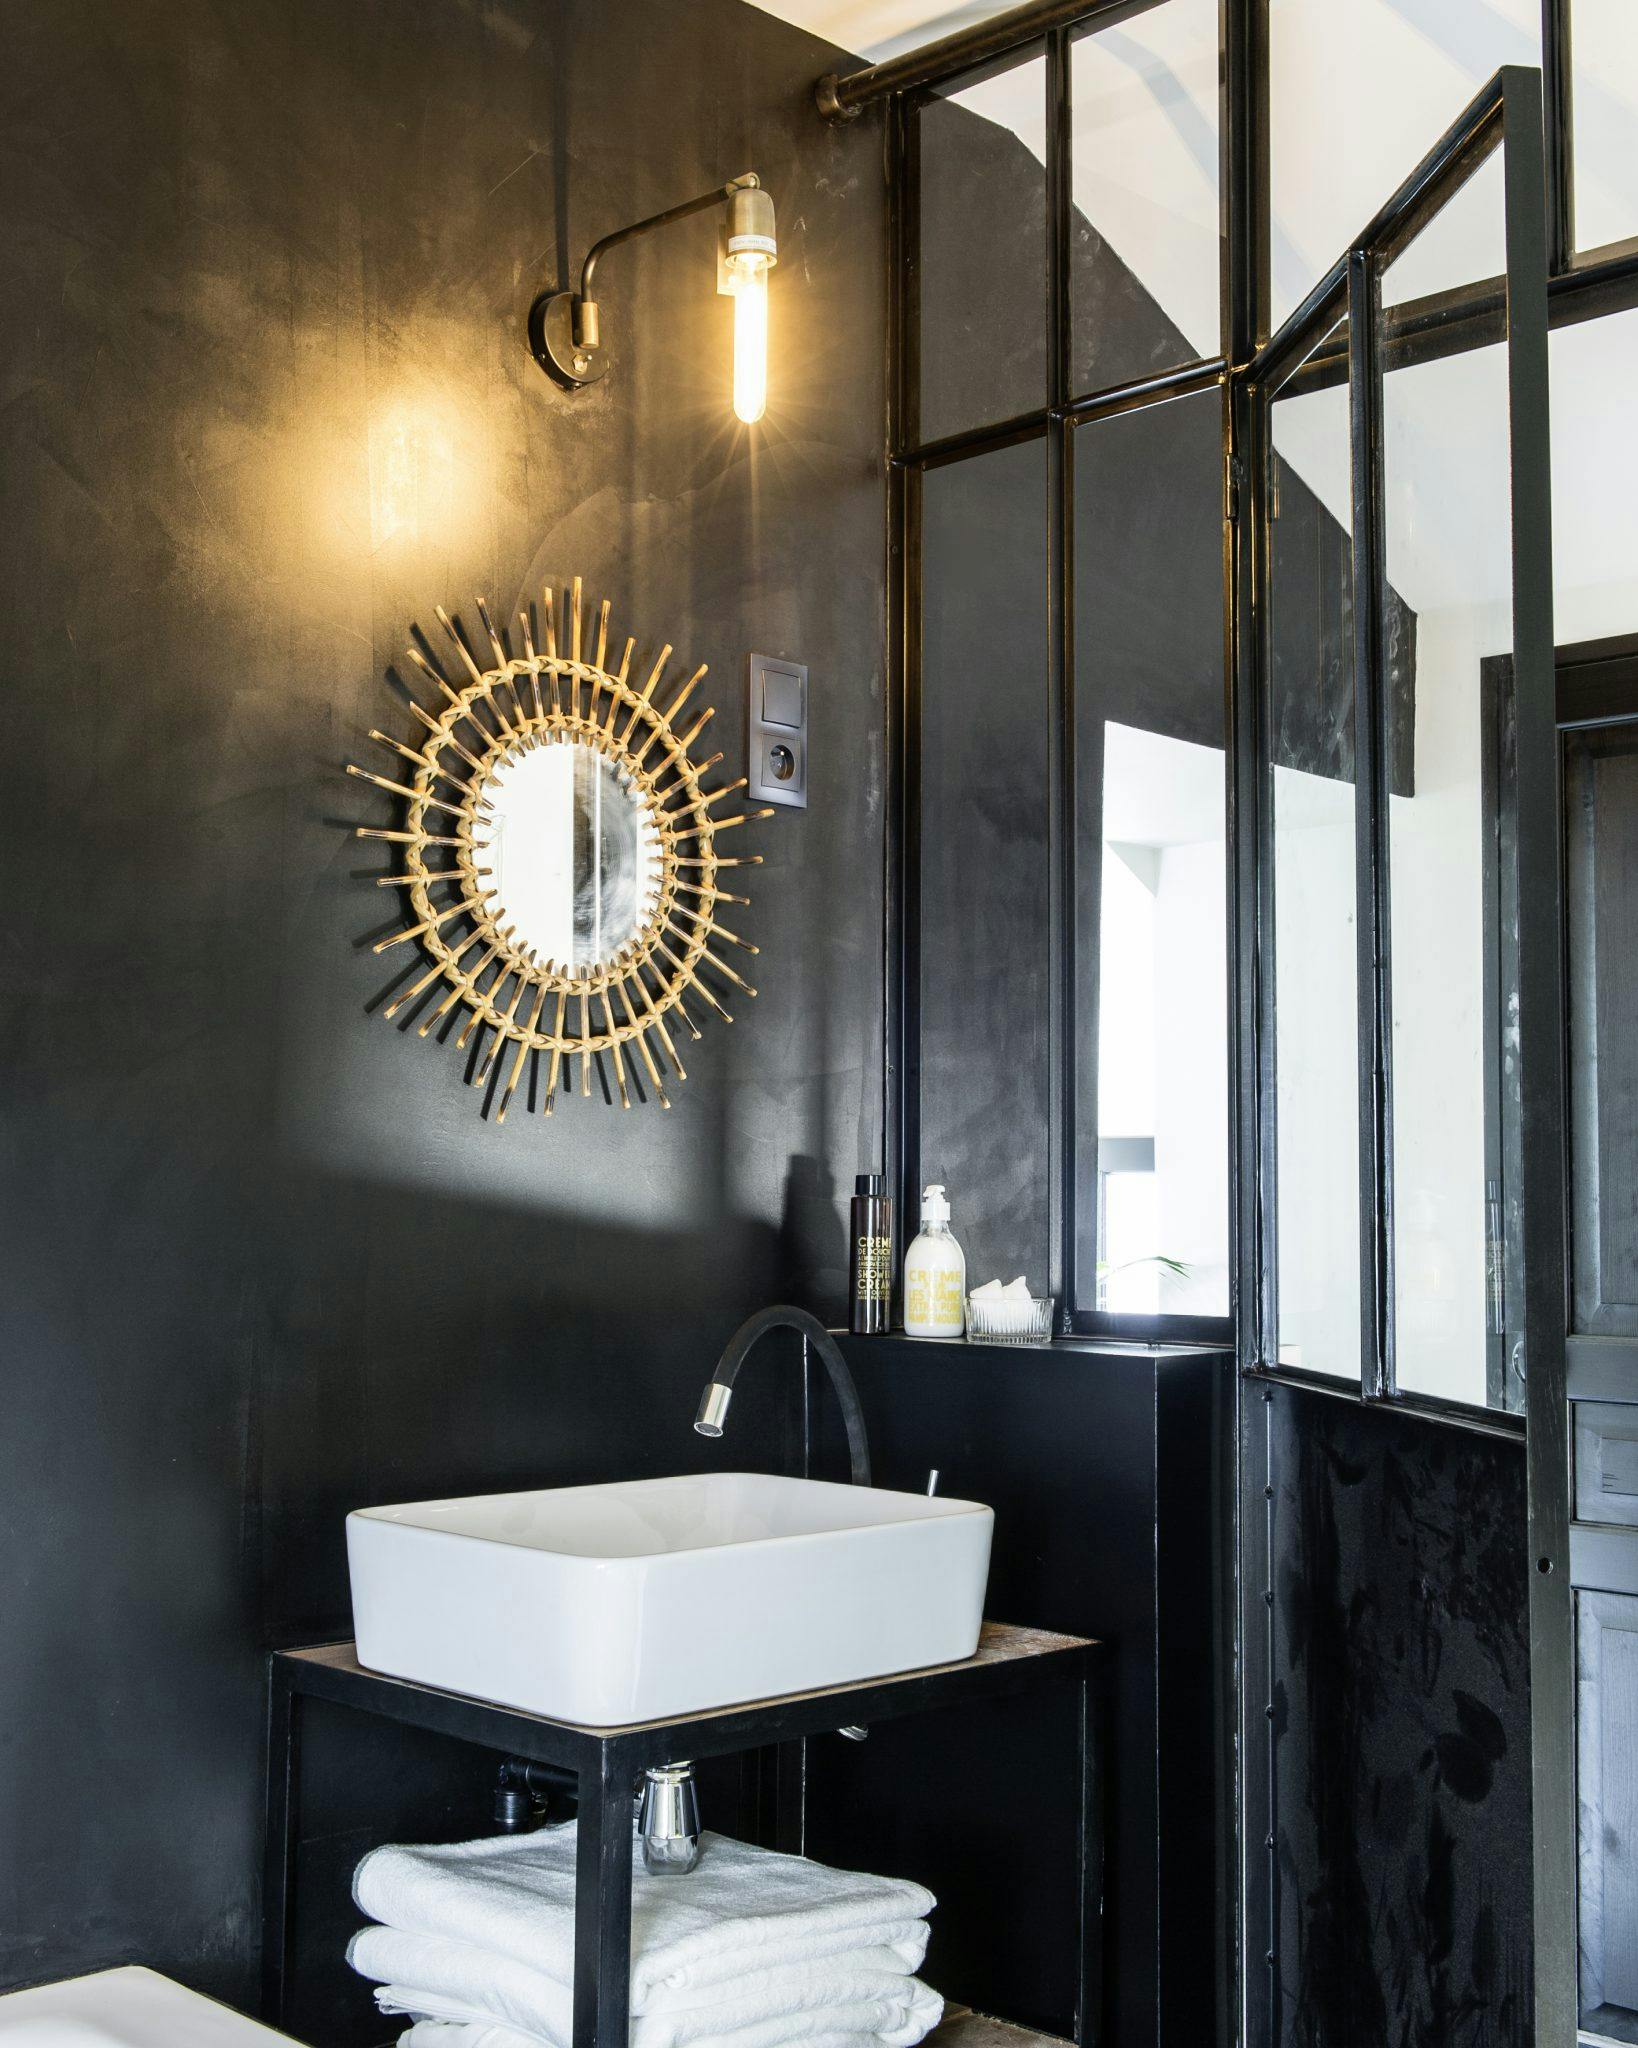 Détail de la salle de bain aux murs noirs, baie vitrée et miroir doré.